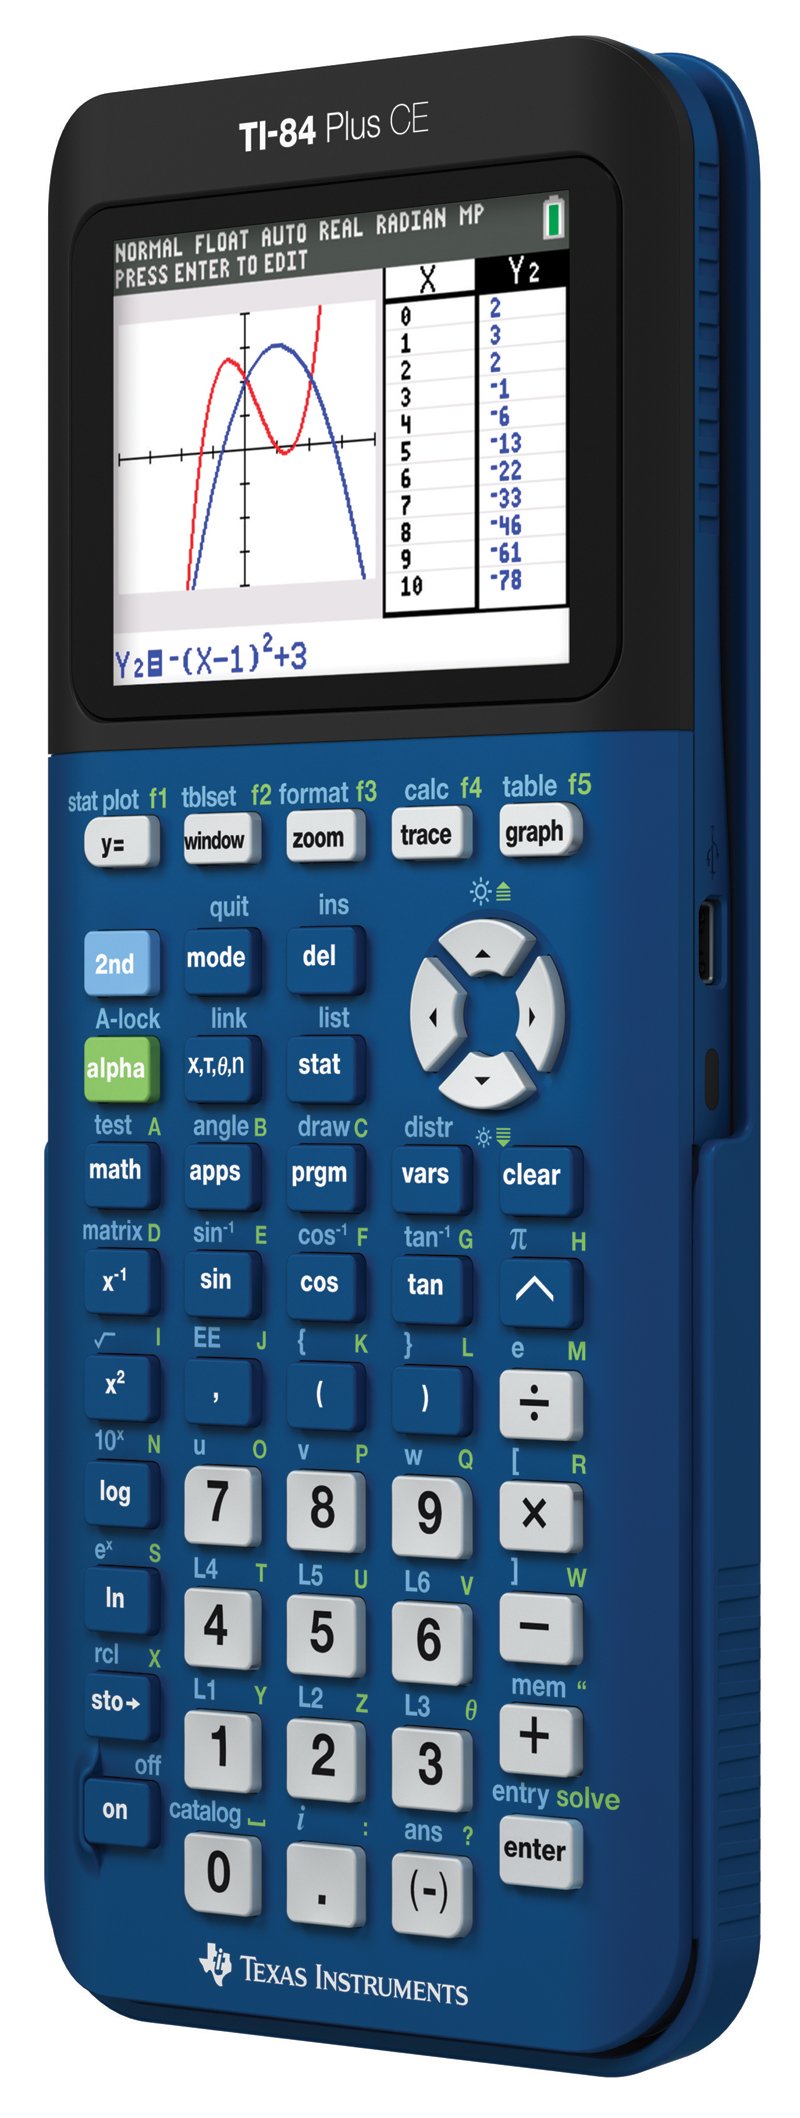 Texas Instruments حاسبة رسوم بيانية للدينيم TI- 84 Plus CE